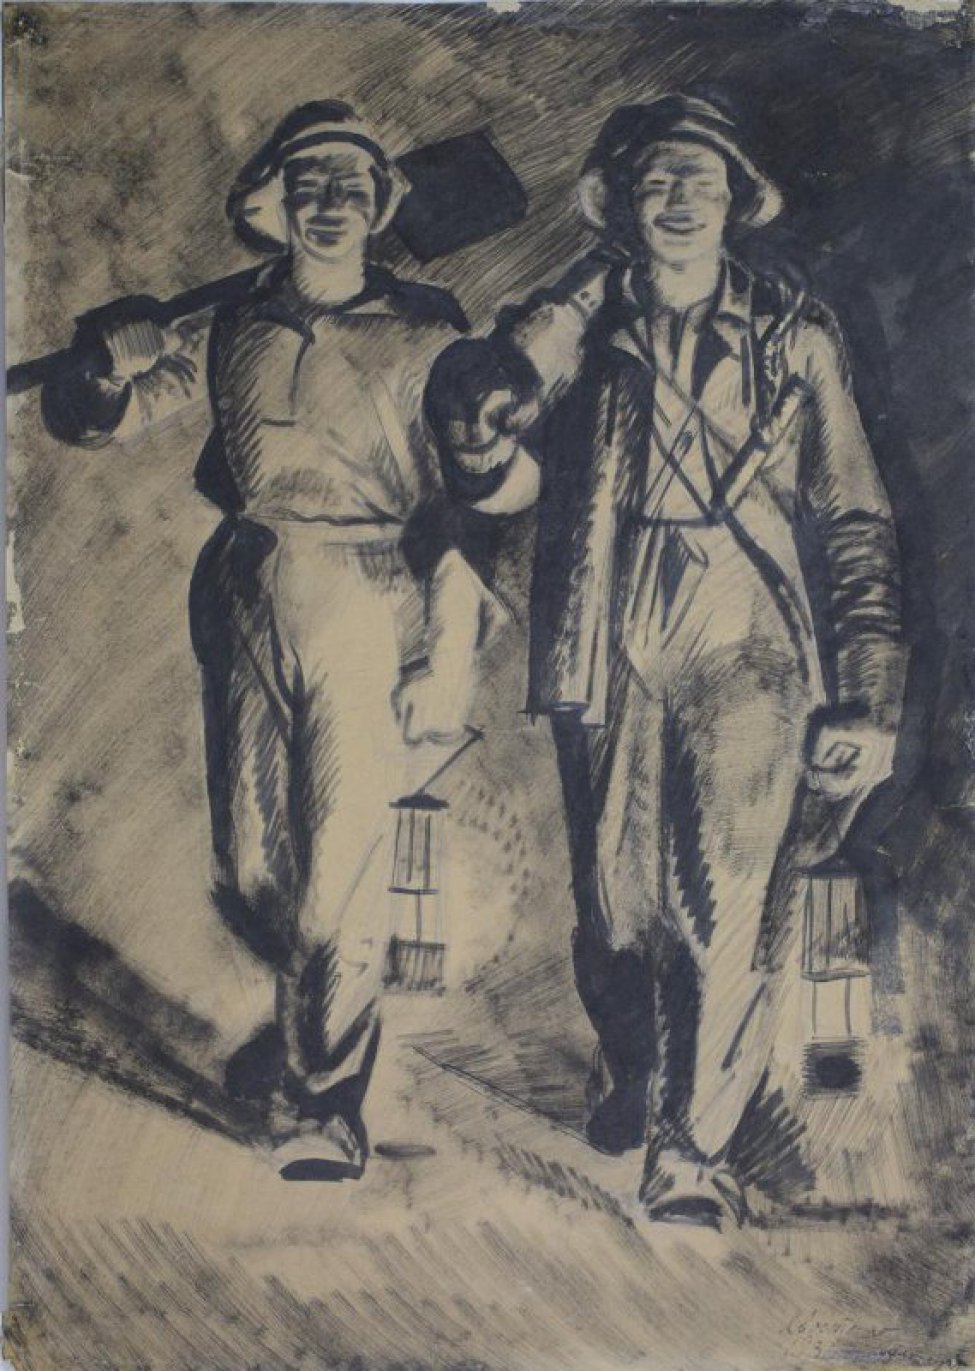 На первом плане изображены два шахтера; в руках лампы. Шахтер, идущий слева, несет на плече лопату; у другого шахтера в руках инструмент.